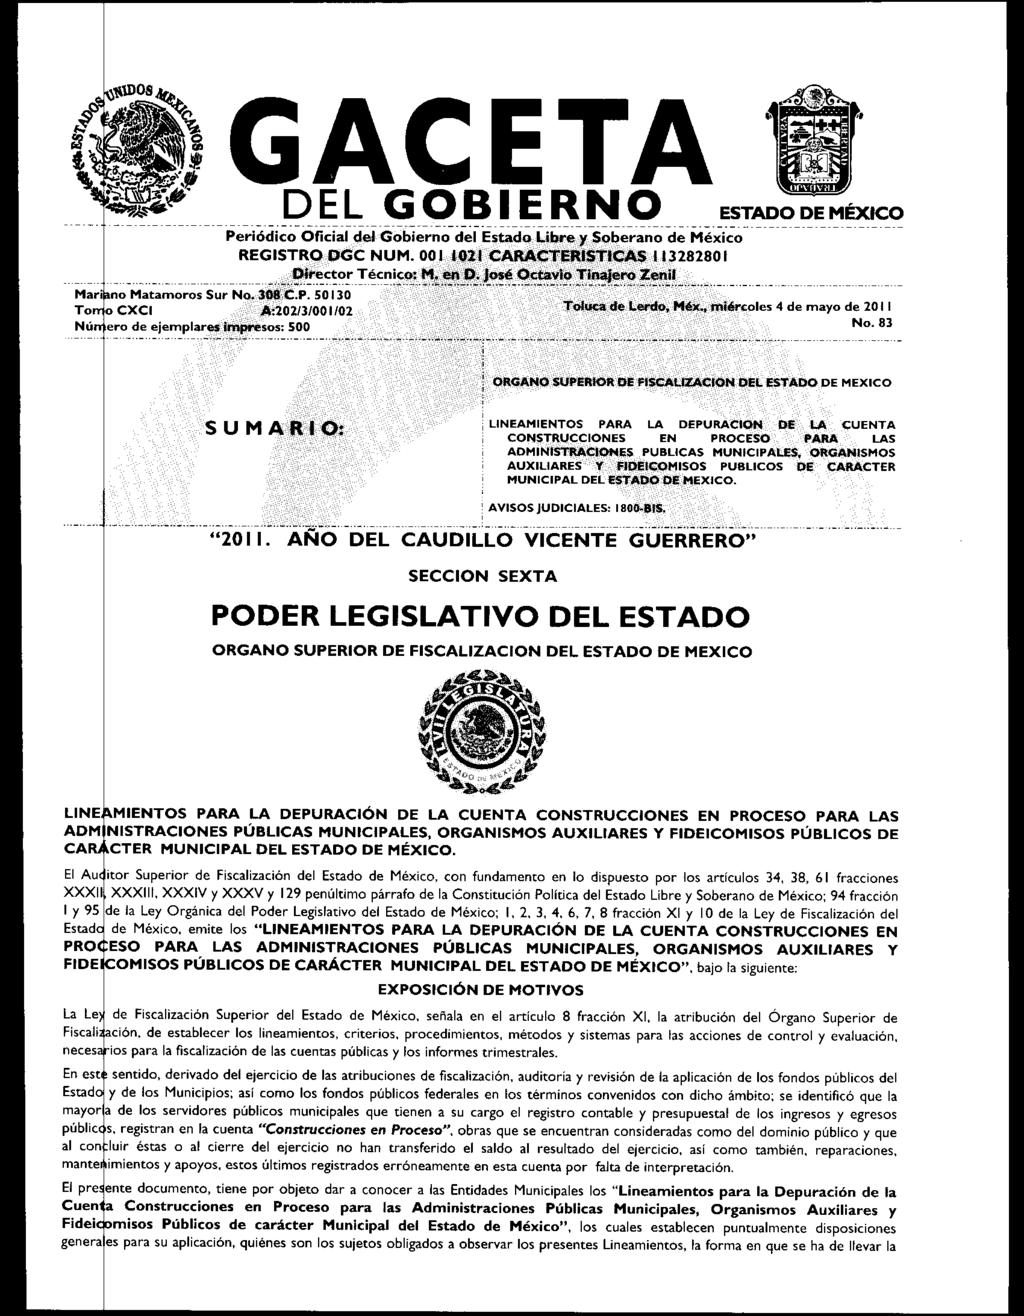 CETAESTADO DE MÉXICO DEL GOBIERNO Periódico Oficial del Gobierno del Estado Libre y Soberano de México REGISTRO OGC NUM. 001 1021 CARACTERISTICAS 113128280 I _,Director Técnico M etitt.